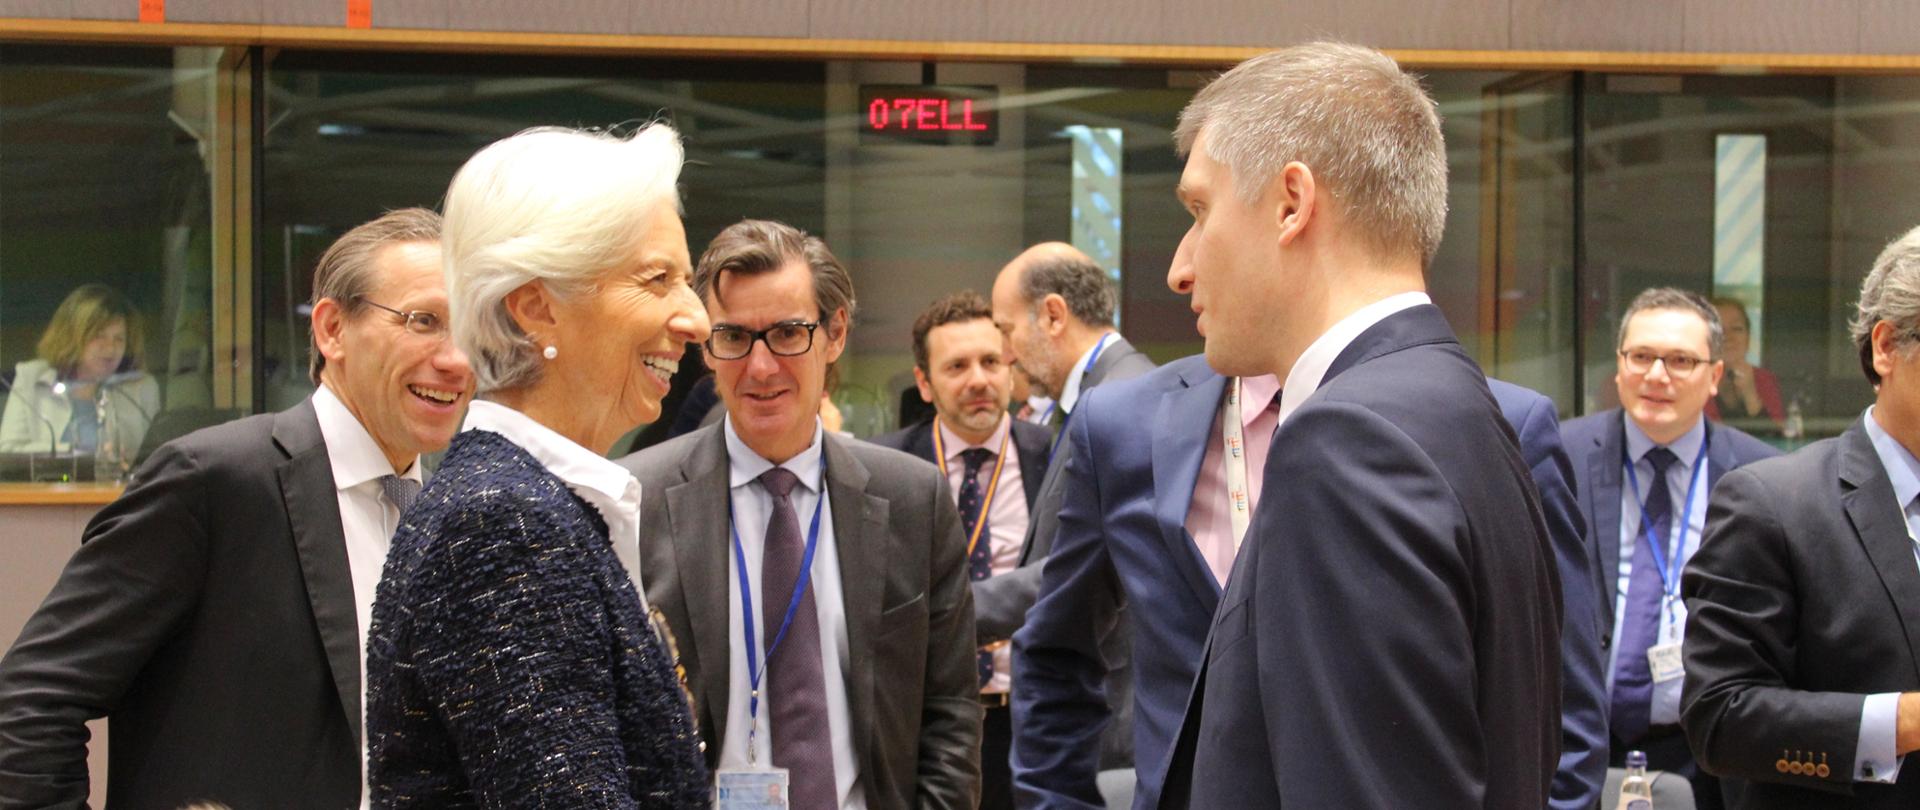 Minister Piotr Nowak wita się z uśmiechniętą prezes Europejskiego Banku Centralnego Christine Lagarde. 